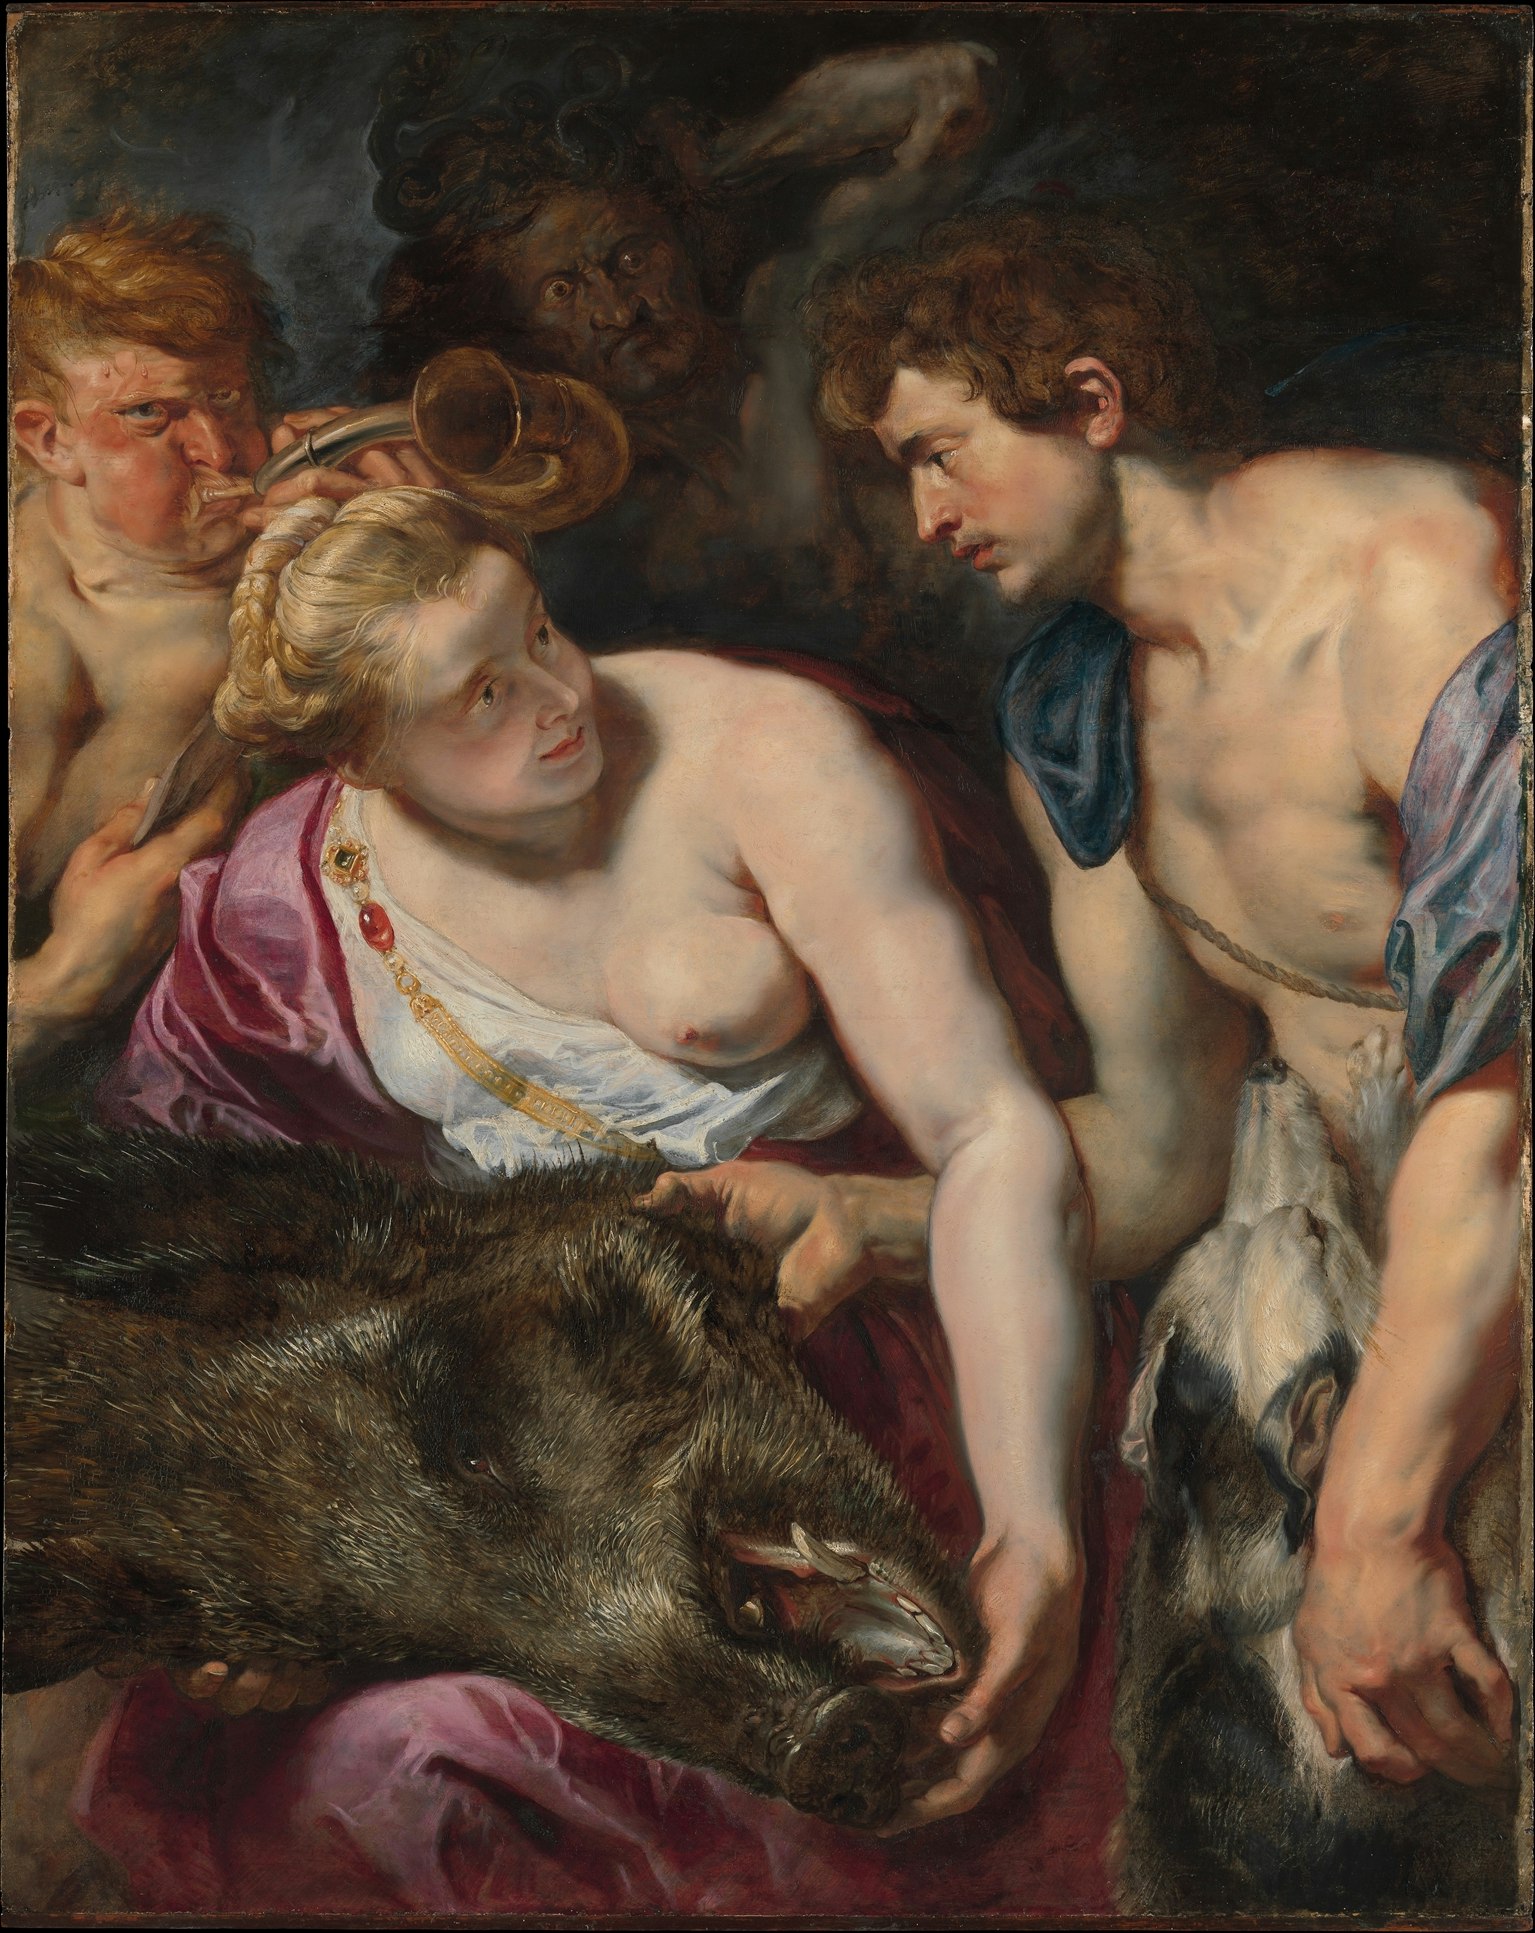 Atalanta and Meleager by Peter Paul Rubens, circa 1616